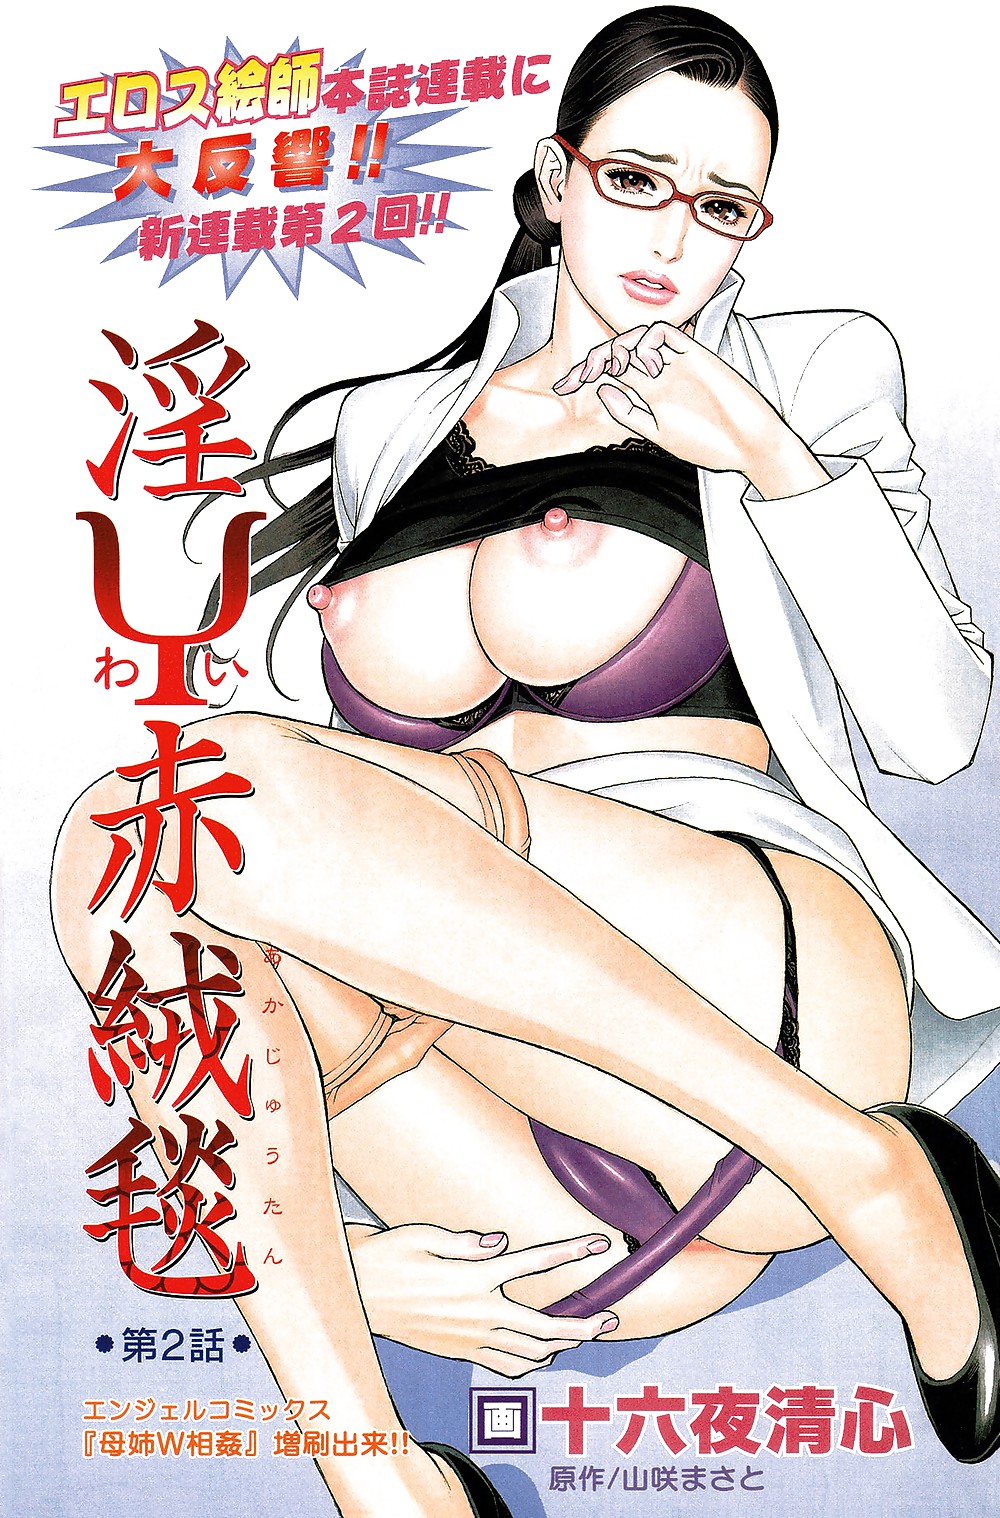 The Art of Izayoi Seishin - The World's Greatest Hentai #22182385